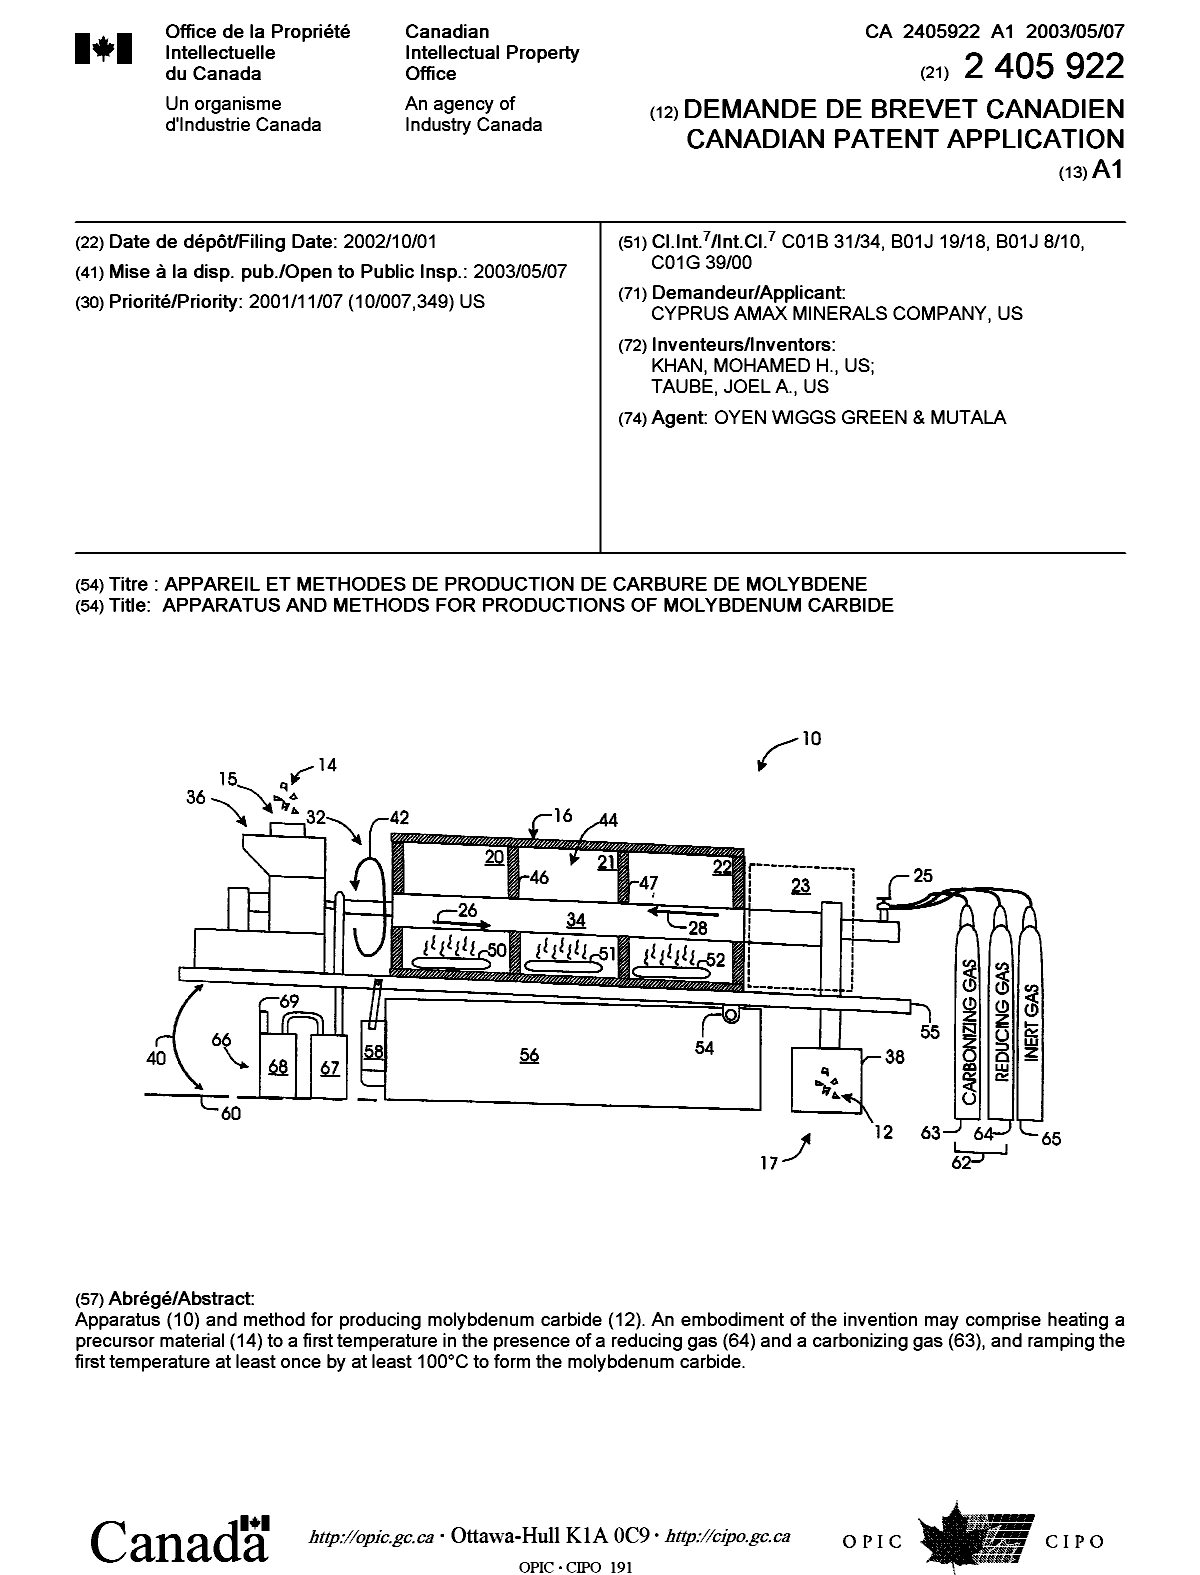 Document de brevet canadien 2405922. Page couverture 20030411. Image 1 de 1